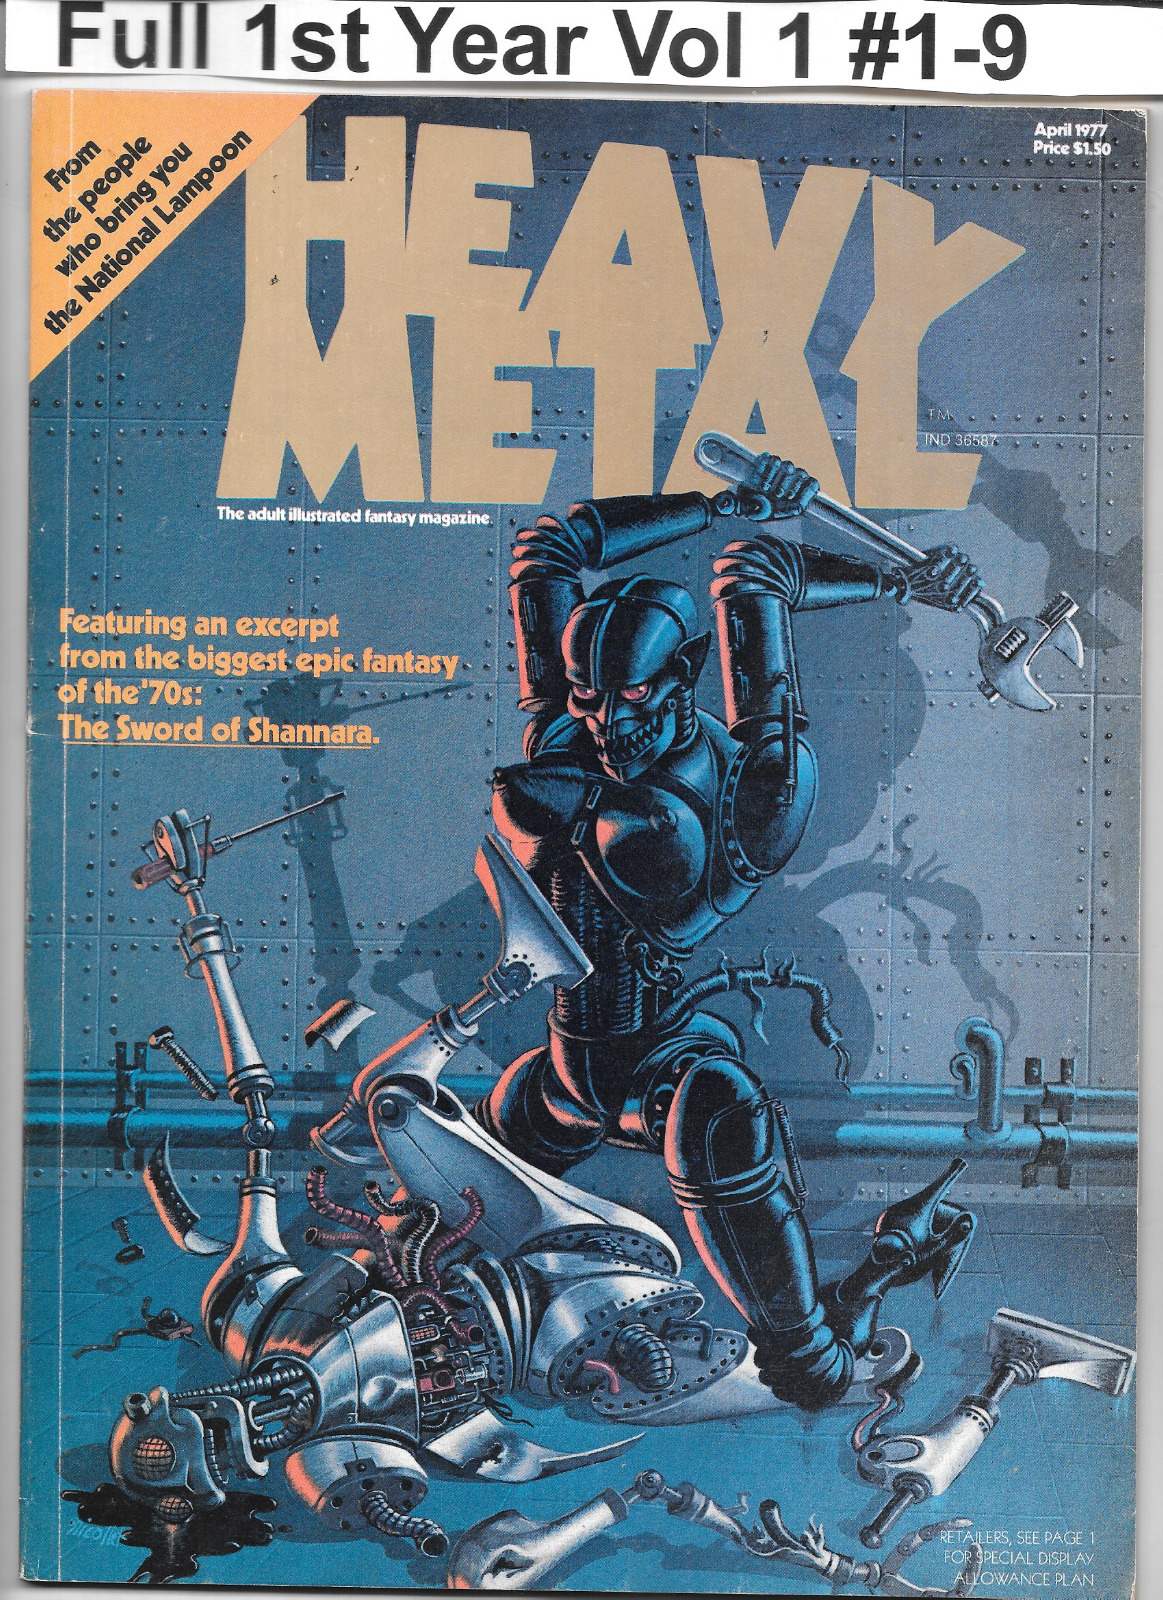 VTG Heavy Metal Magazine #1 - 9 Full 1977 April - December w/HM Hard Case FN/VF